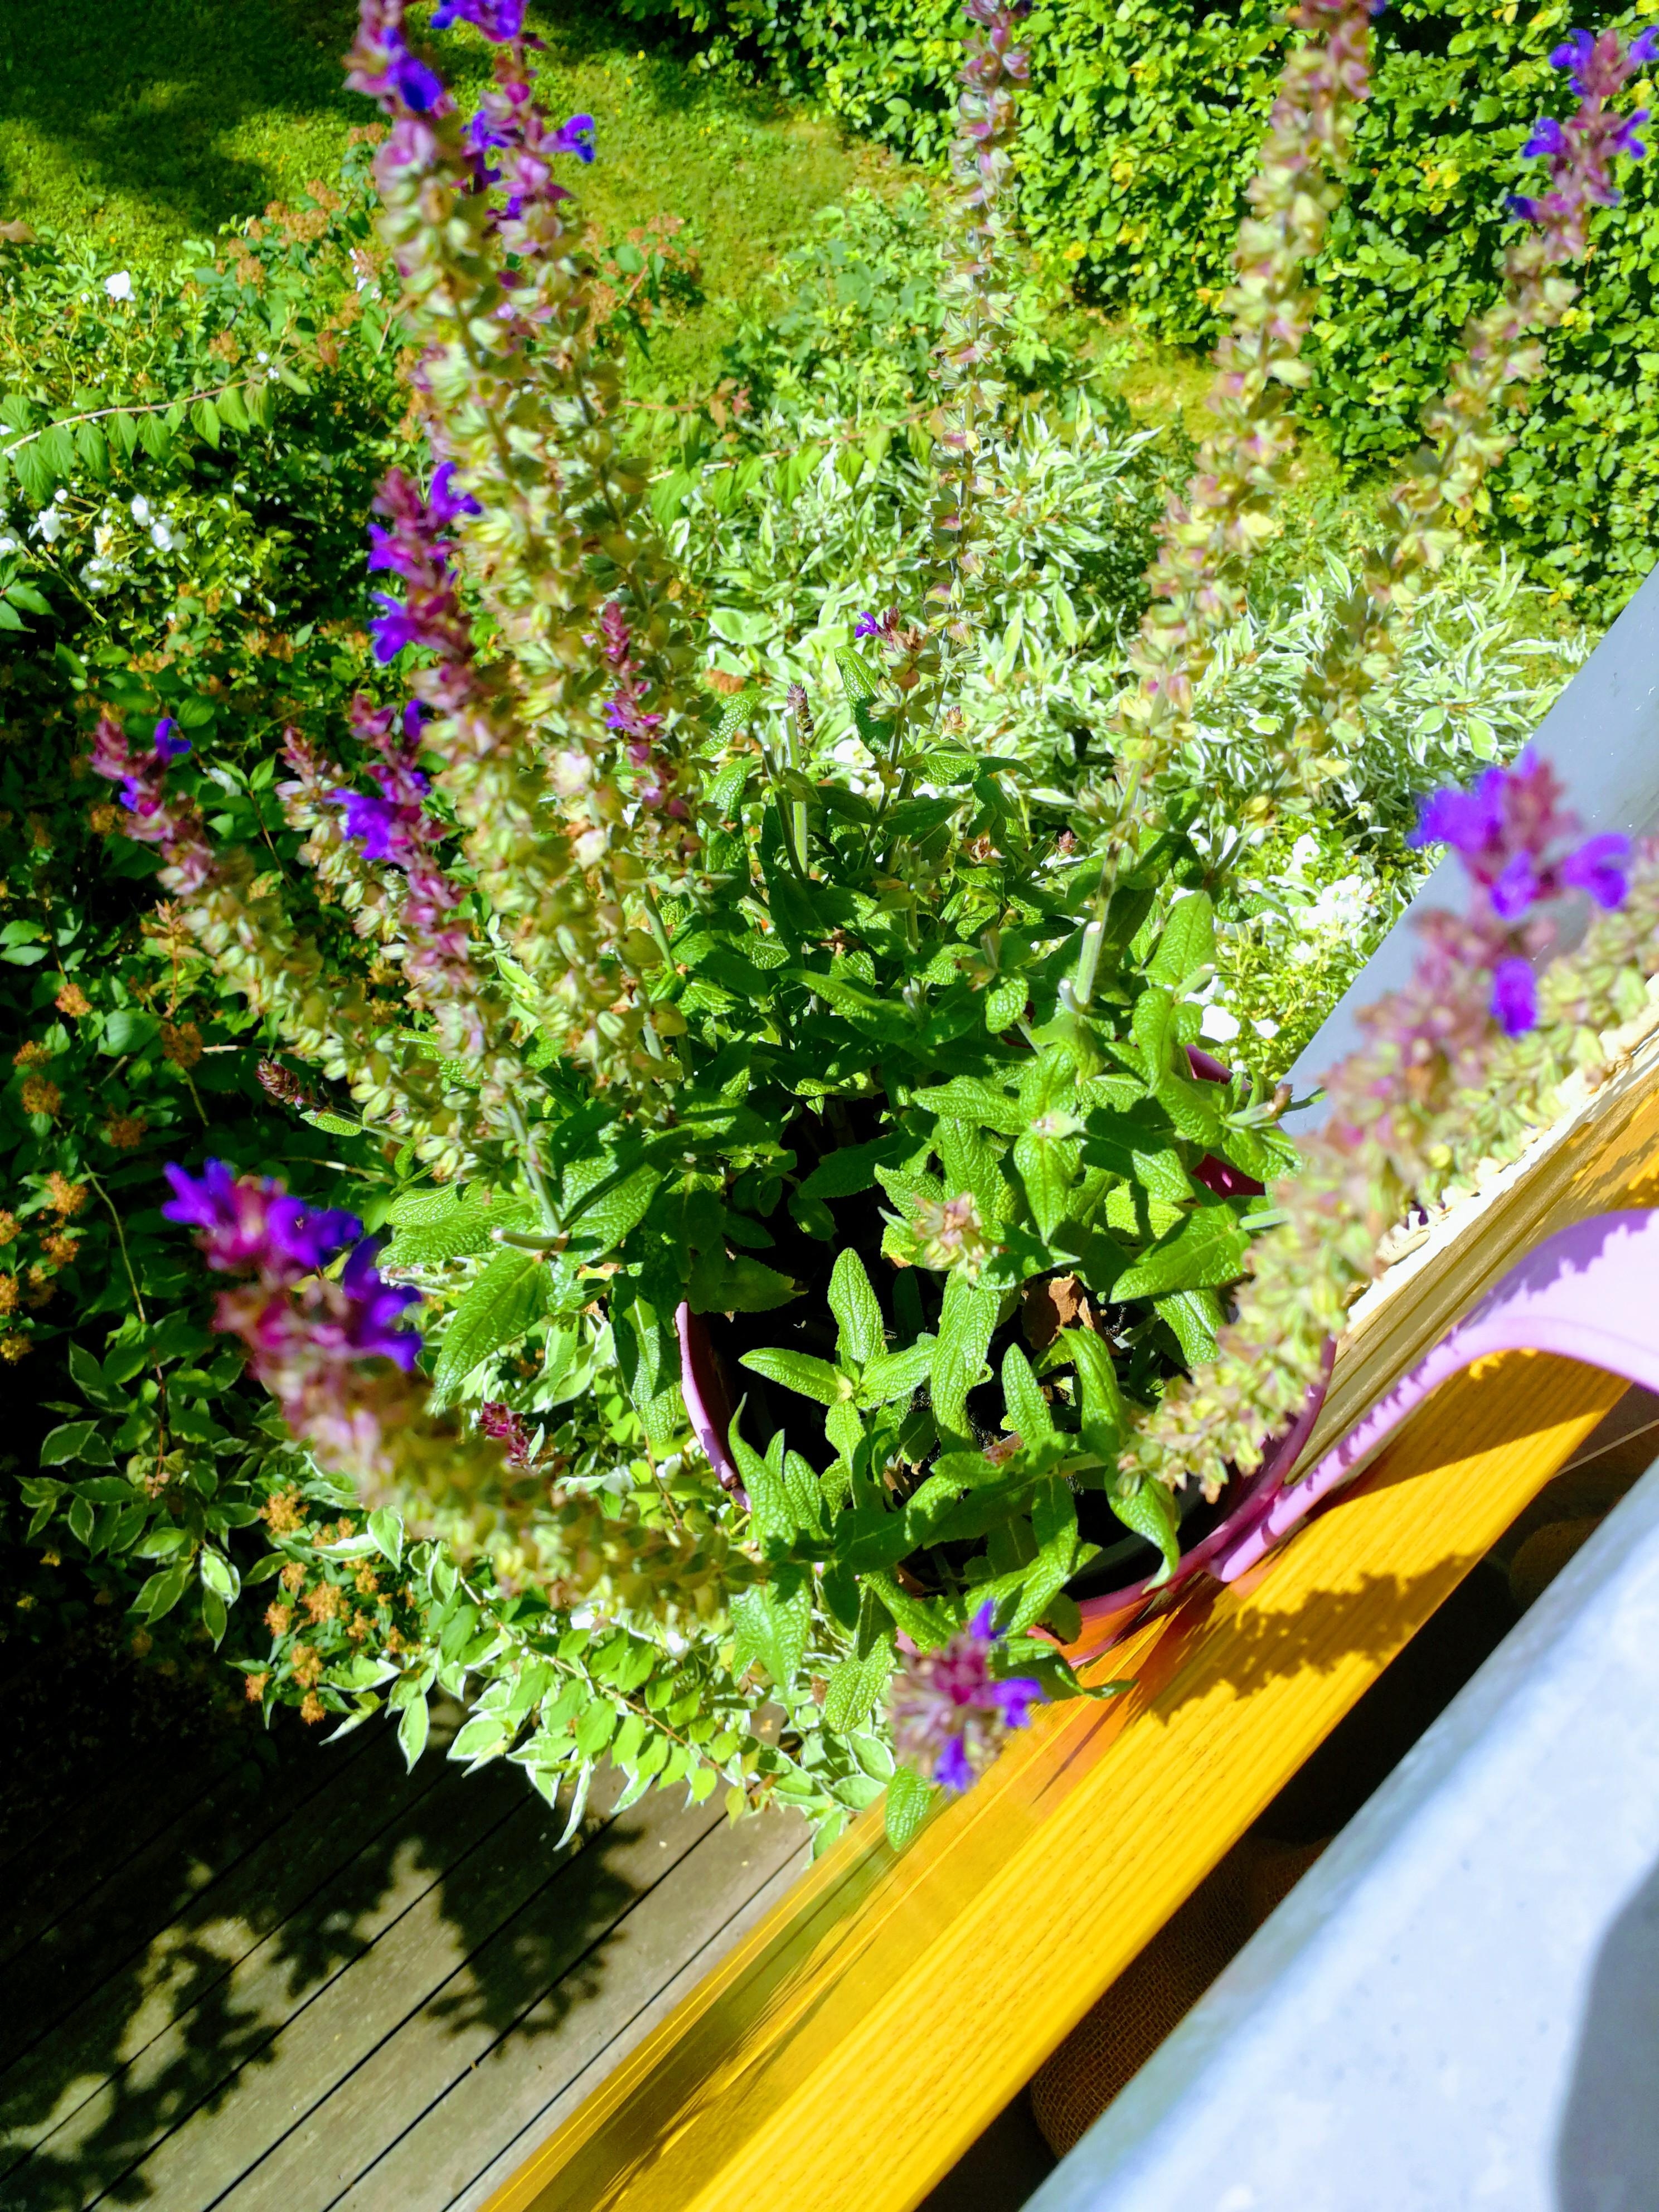 Bleib noch ein bisschen, lieber Sommer 🤗

#balkonliebe #sommer #pflanzenliebe #grün #august #sonne